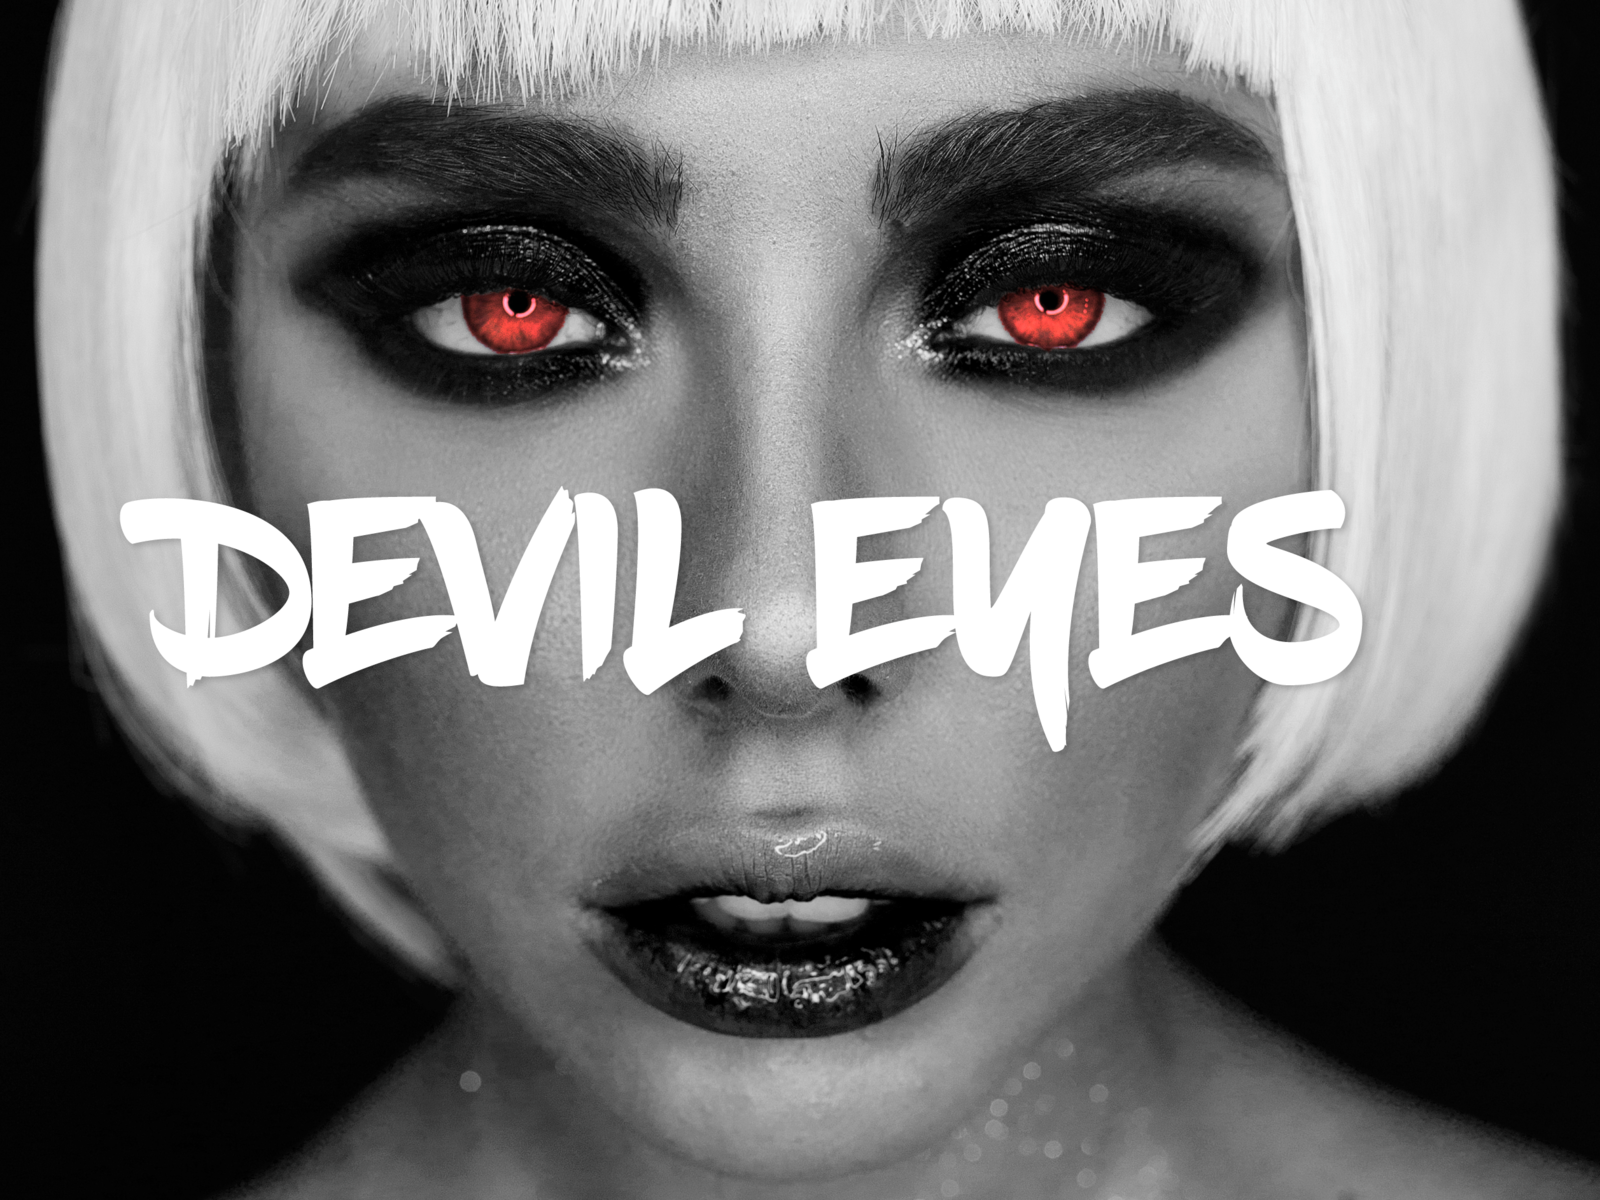 Devil eyes re hab. Devil Eyes Hippie Sabotage. Providence Devil Eyes. Devil Eyes обложка. Devil Eyes zodivk.